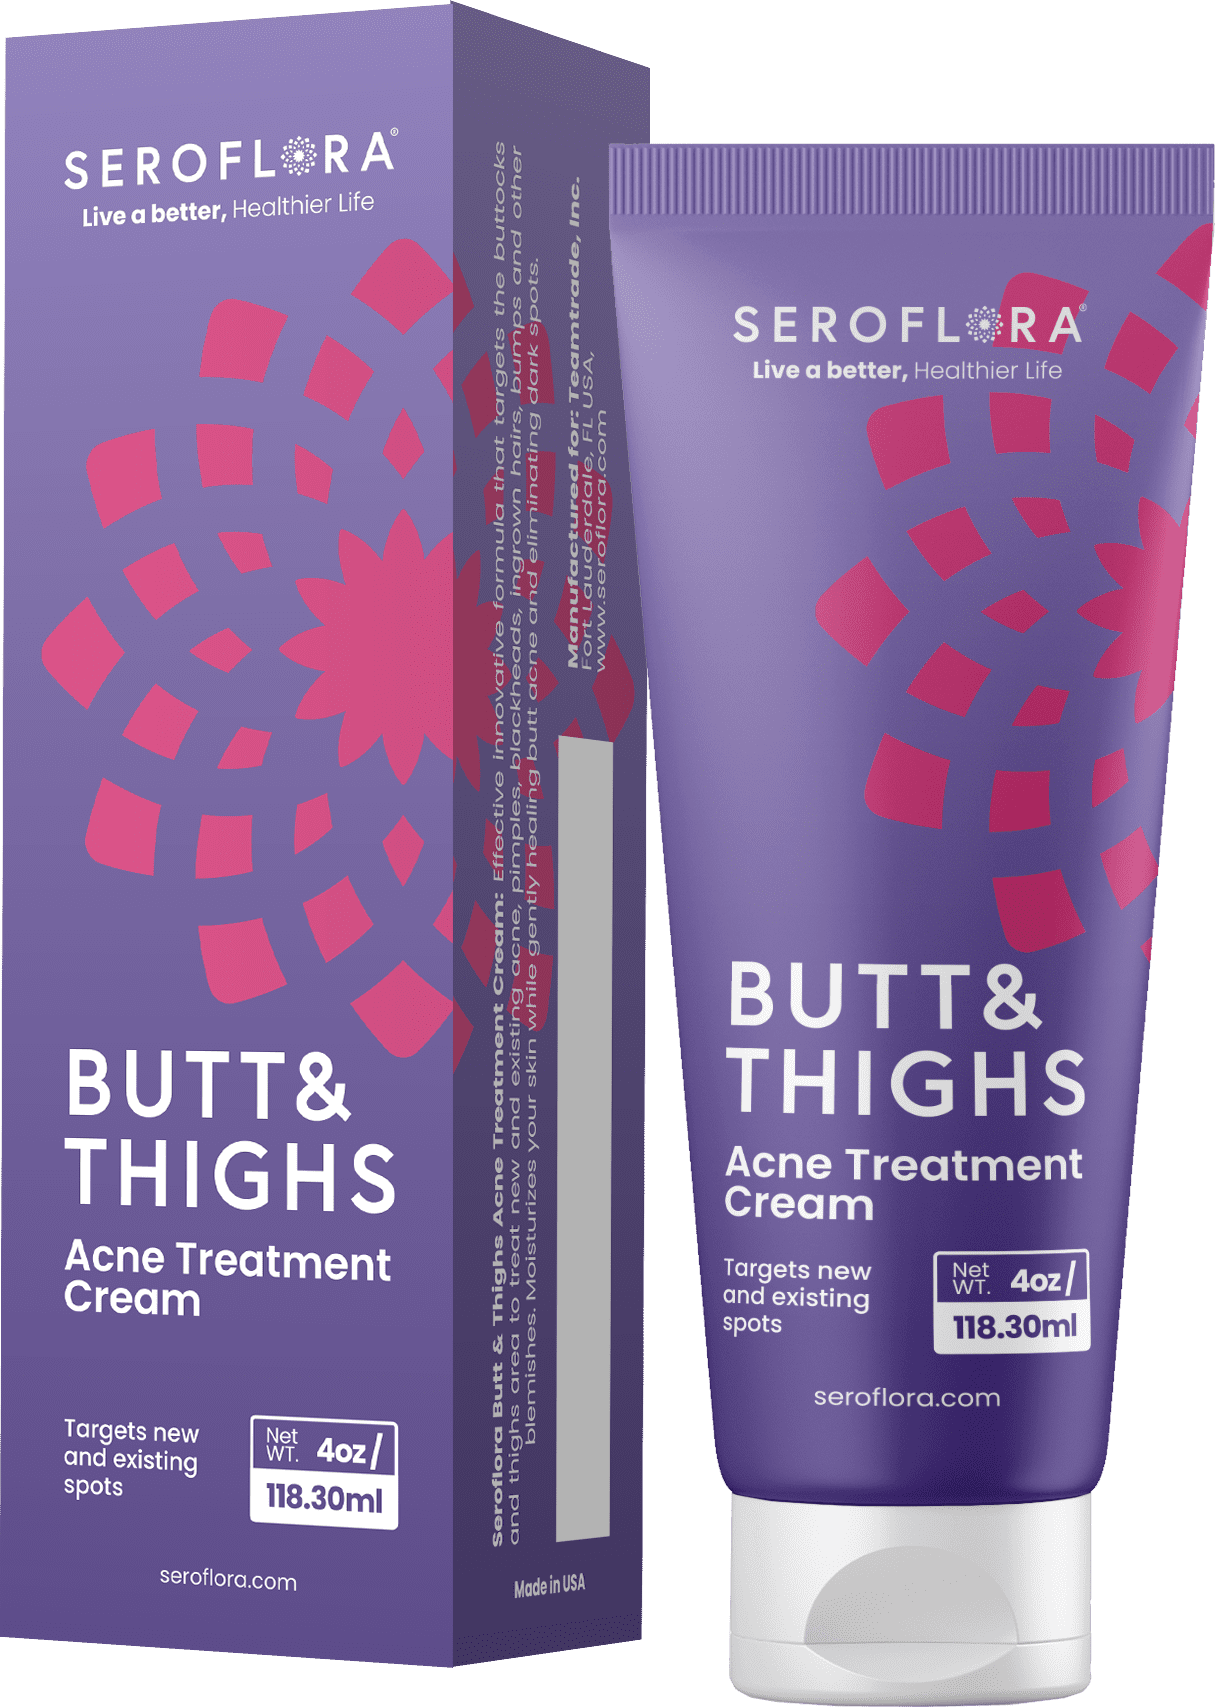 Seroflora Butt & Thighs Acne Treatment Cream - Butt Acne Clearing